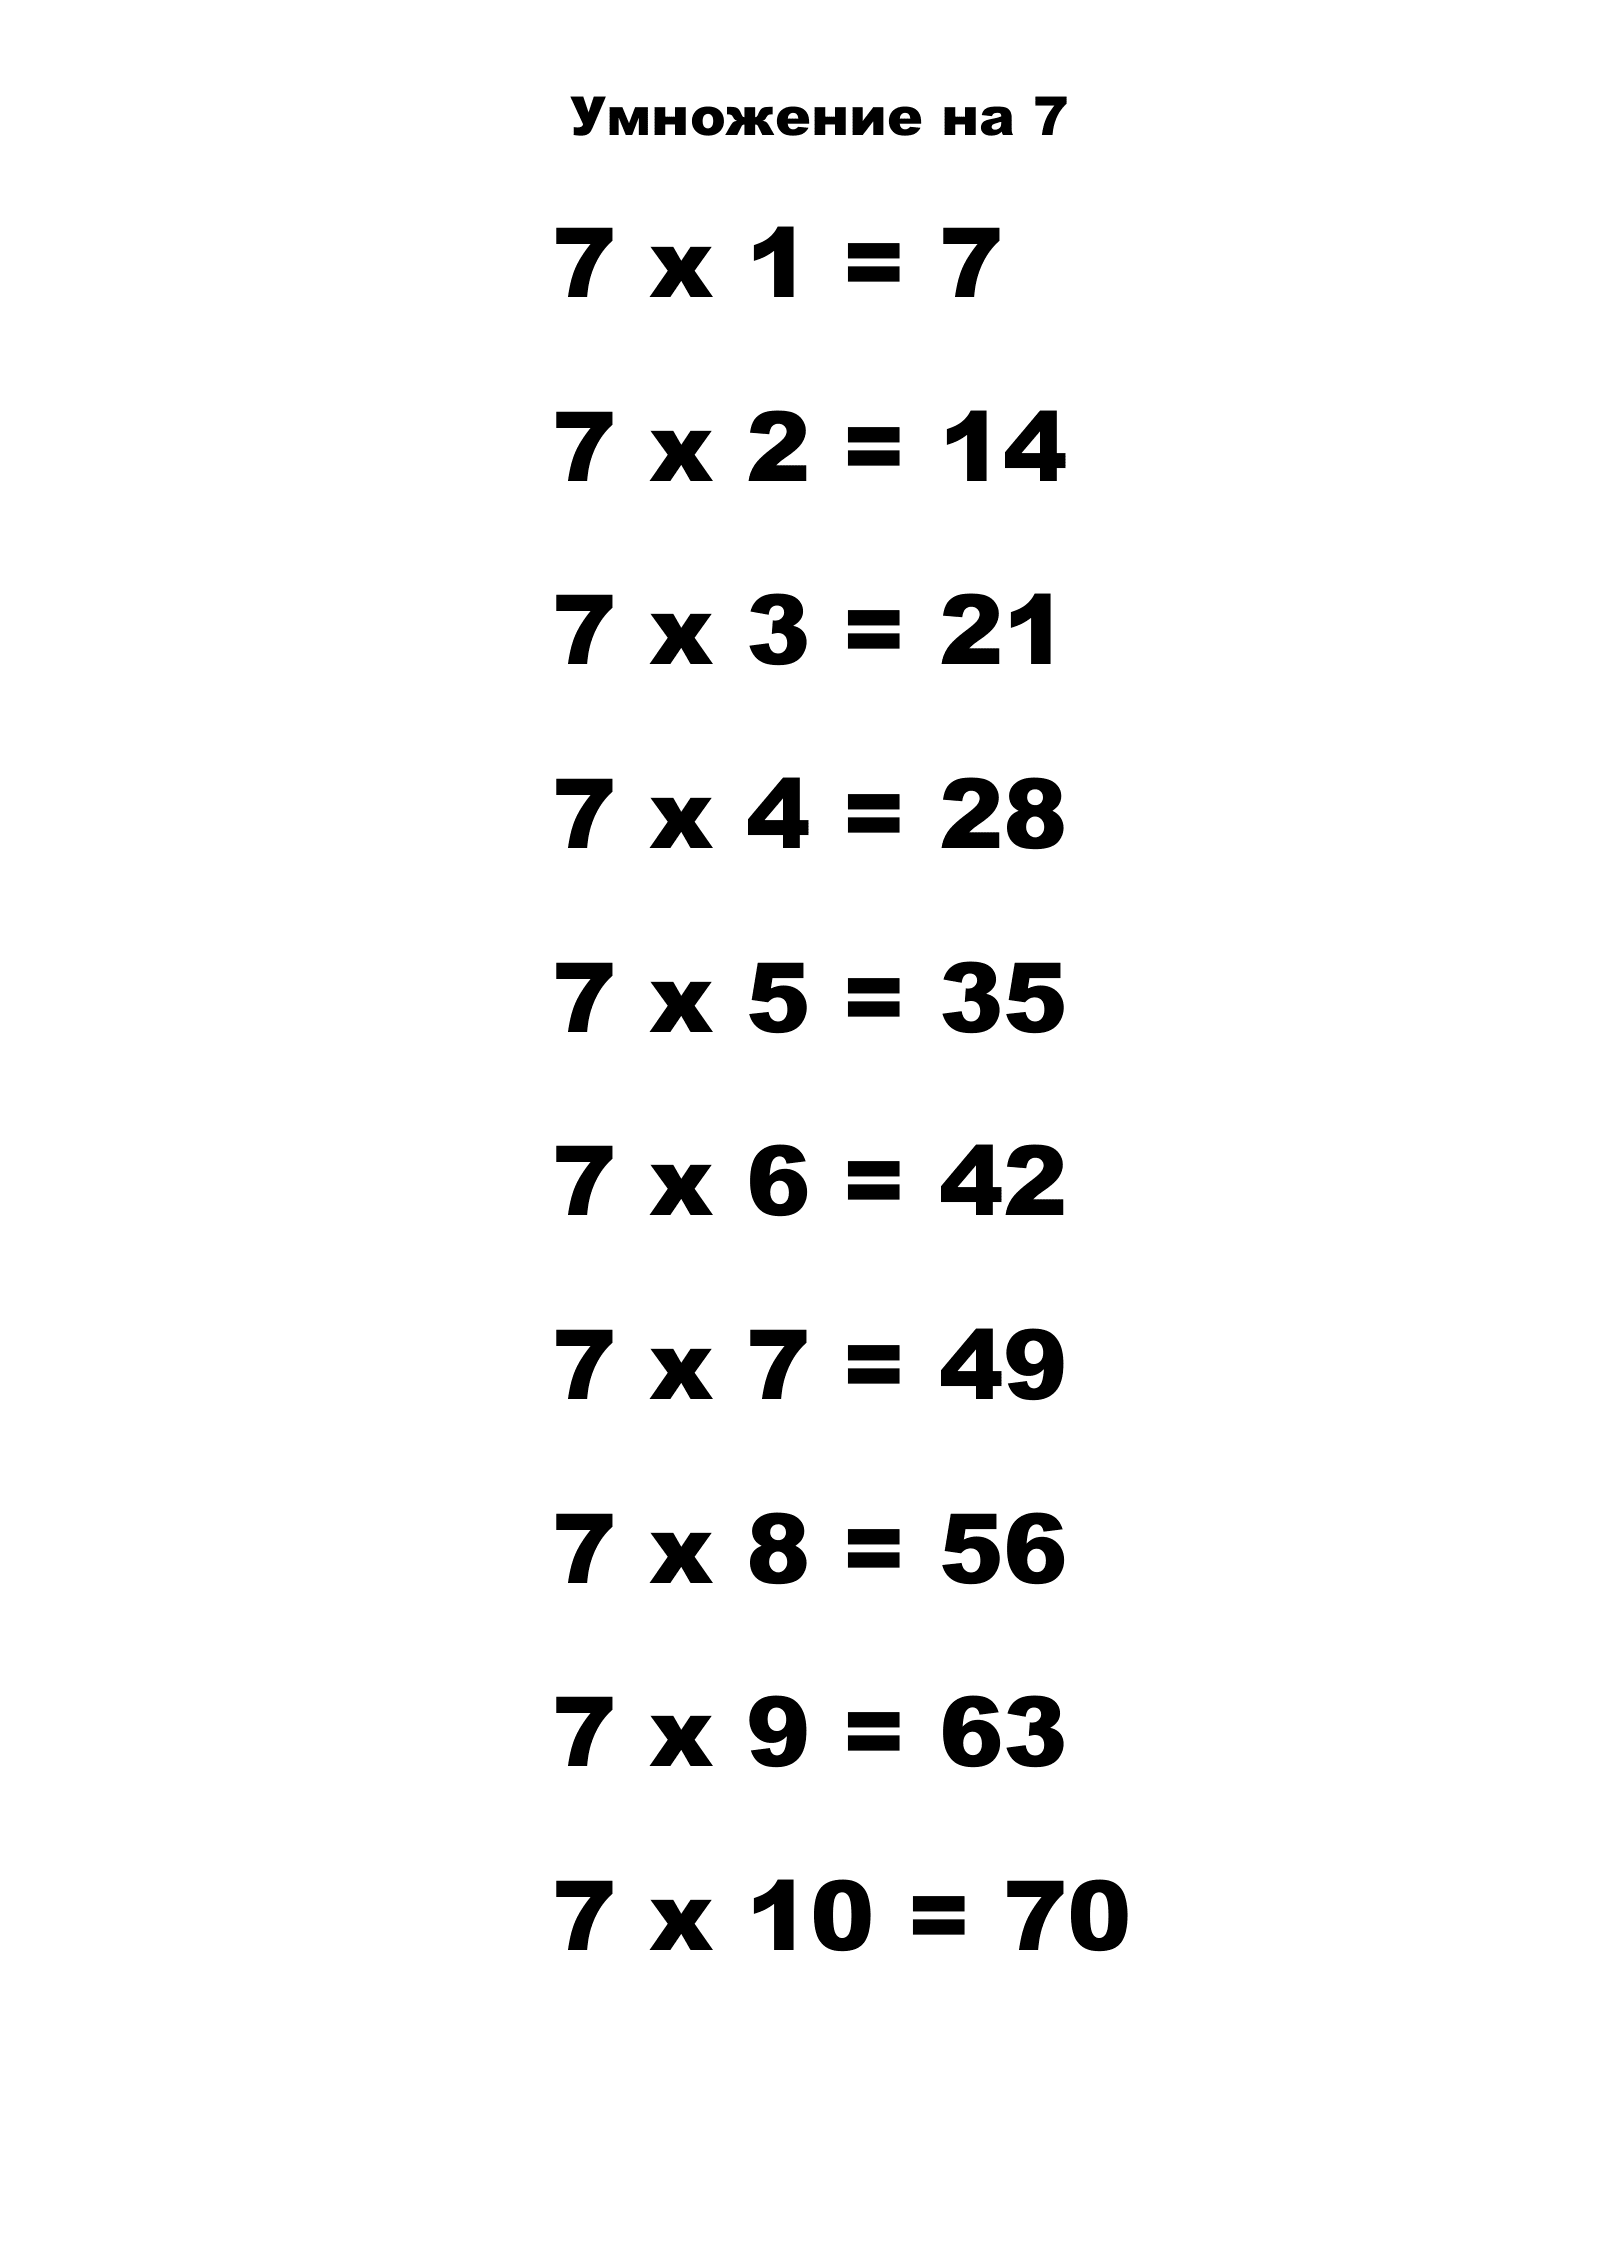 Таблица умножения на 7.